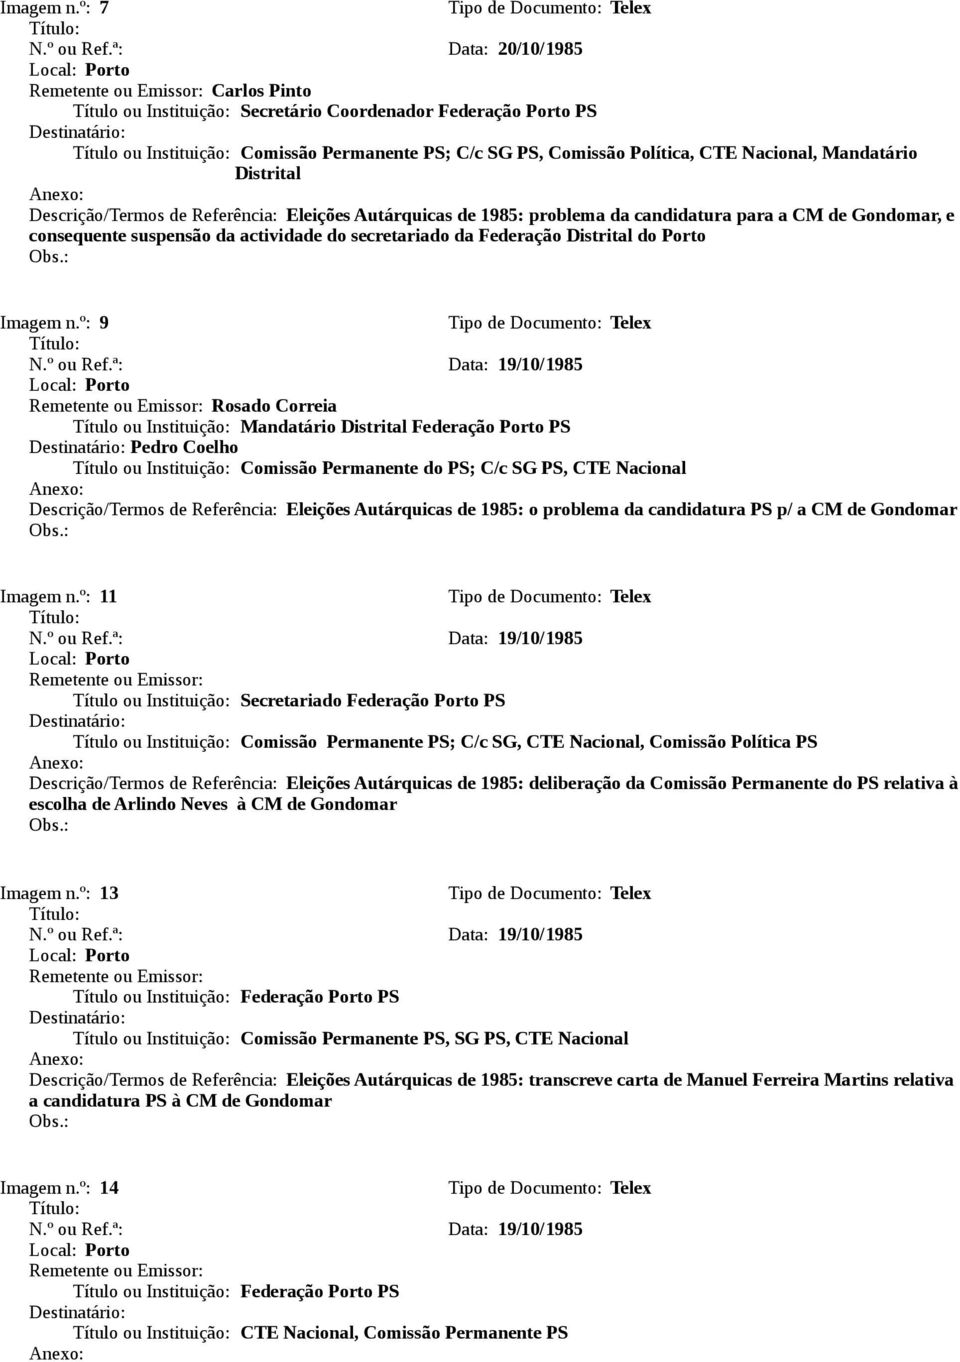 Referência: Eleições Autárquicas de 1985: problema da candidatura para a CM de, e consequente suspensão da actividade do secretariado da Federação Distrital do Porto Imagem n.º: 9 N.º ou Ref.